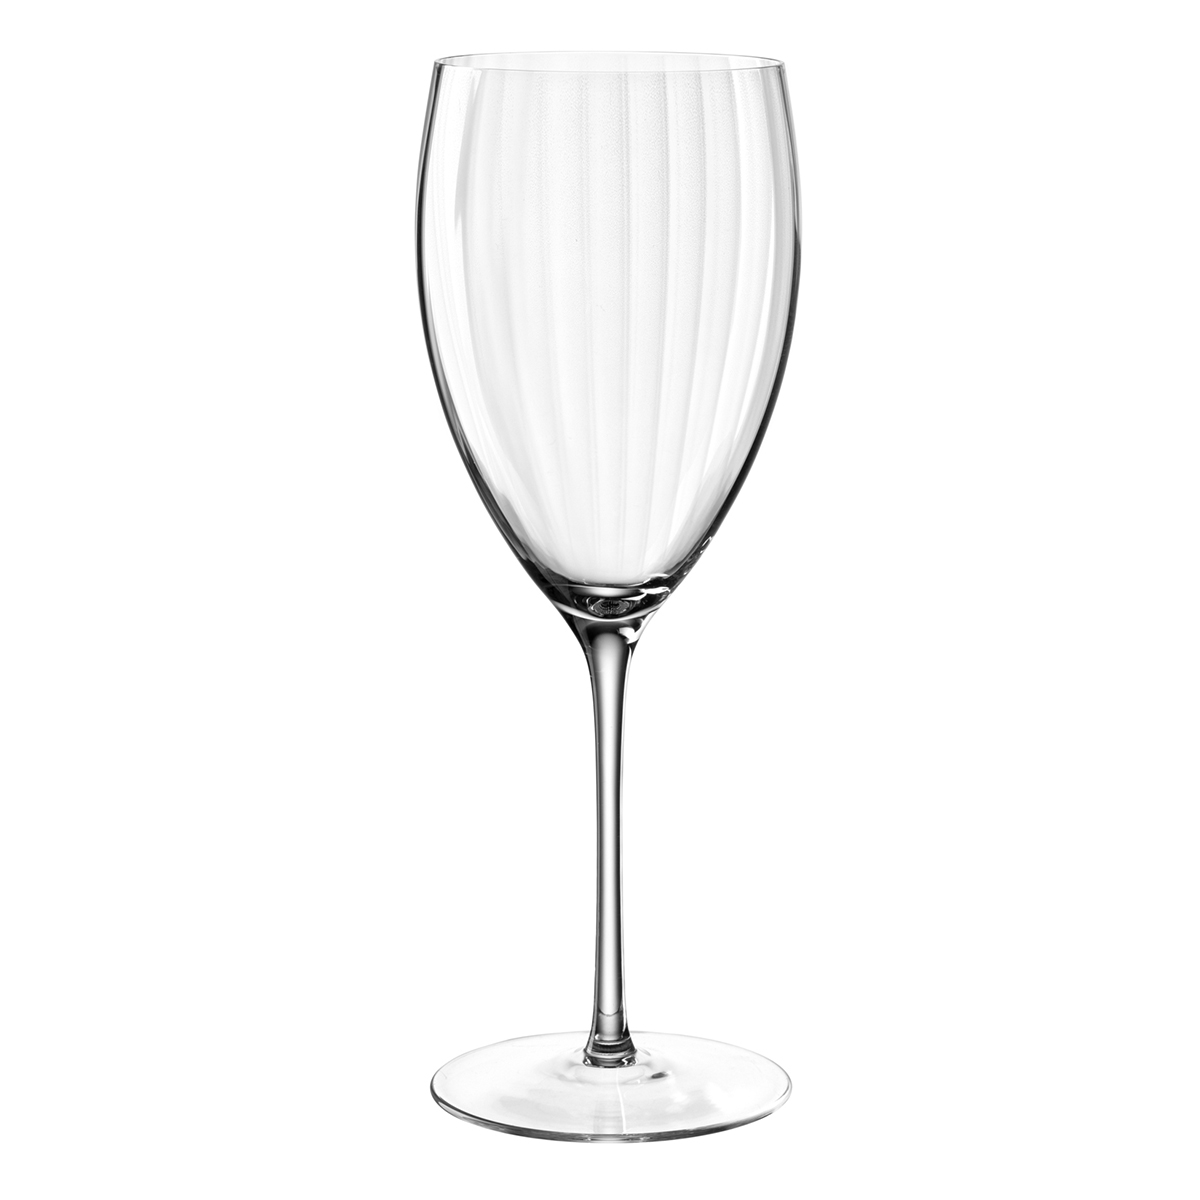 Čaša za belo vino POESIA 450ml 69164 